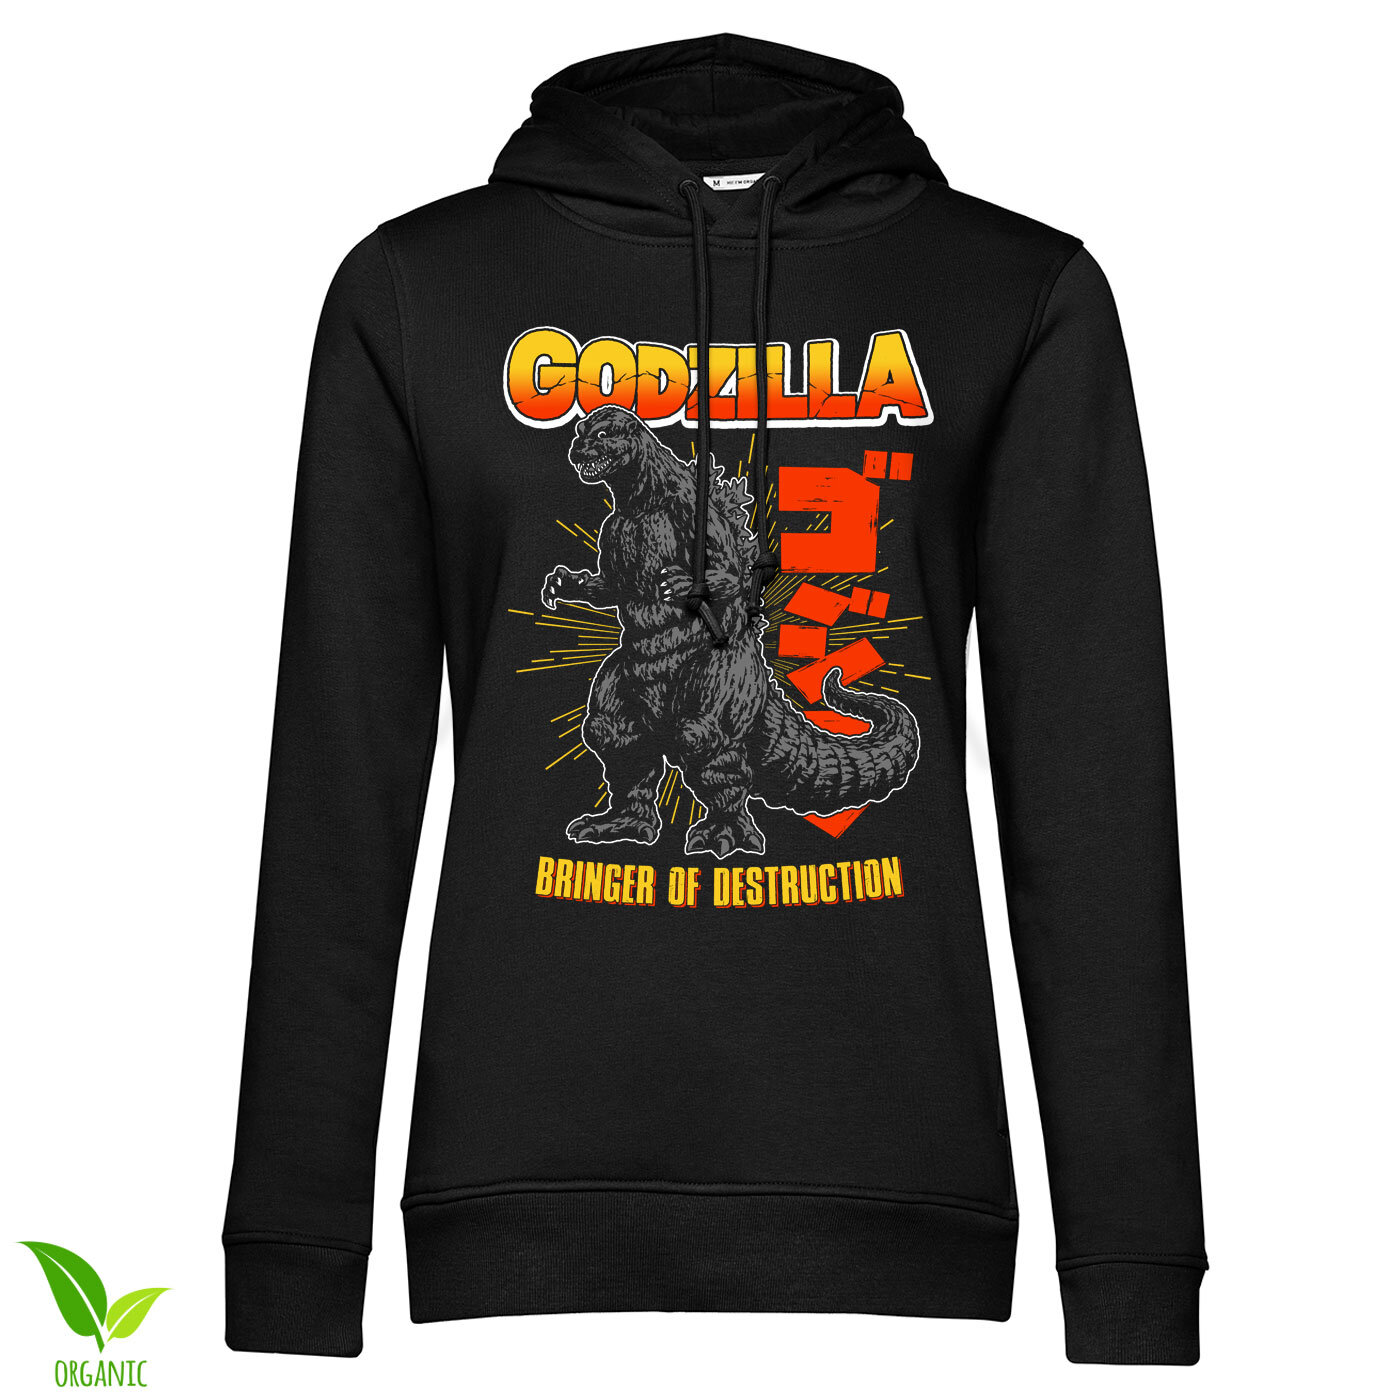 Godzilla - Bringer Of Destruction Girls Hoodie